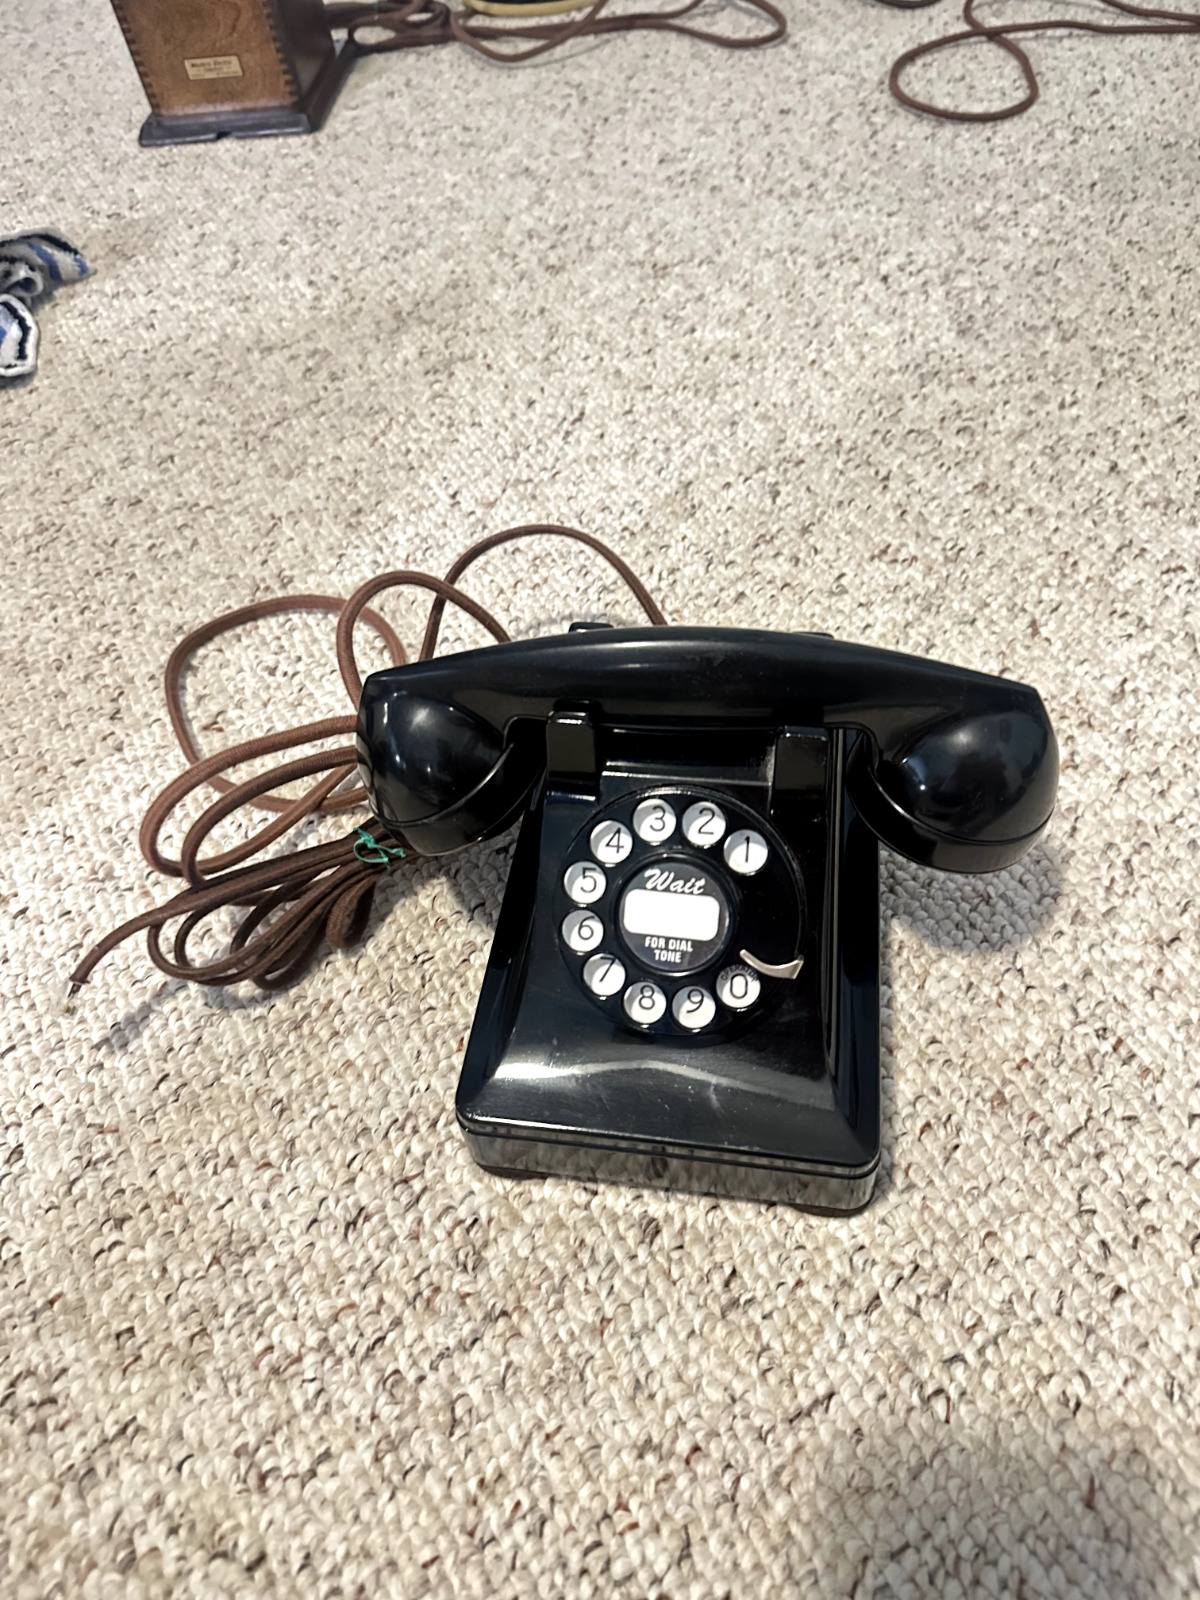 Vintage 1940s WESTERN ELECTRIC 302 ROTARY TELEPHONE Bakelite & Metal Phone H1 F1